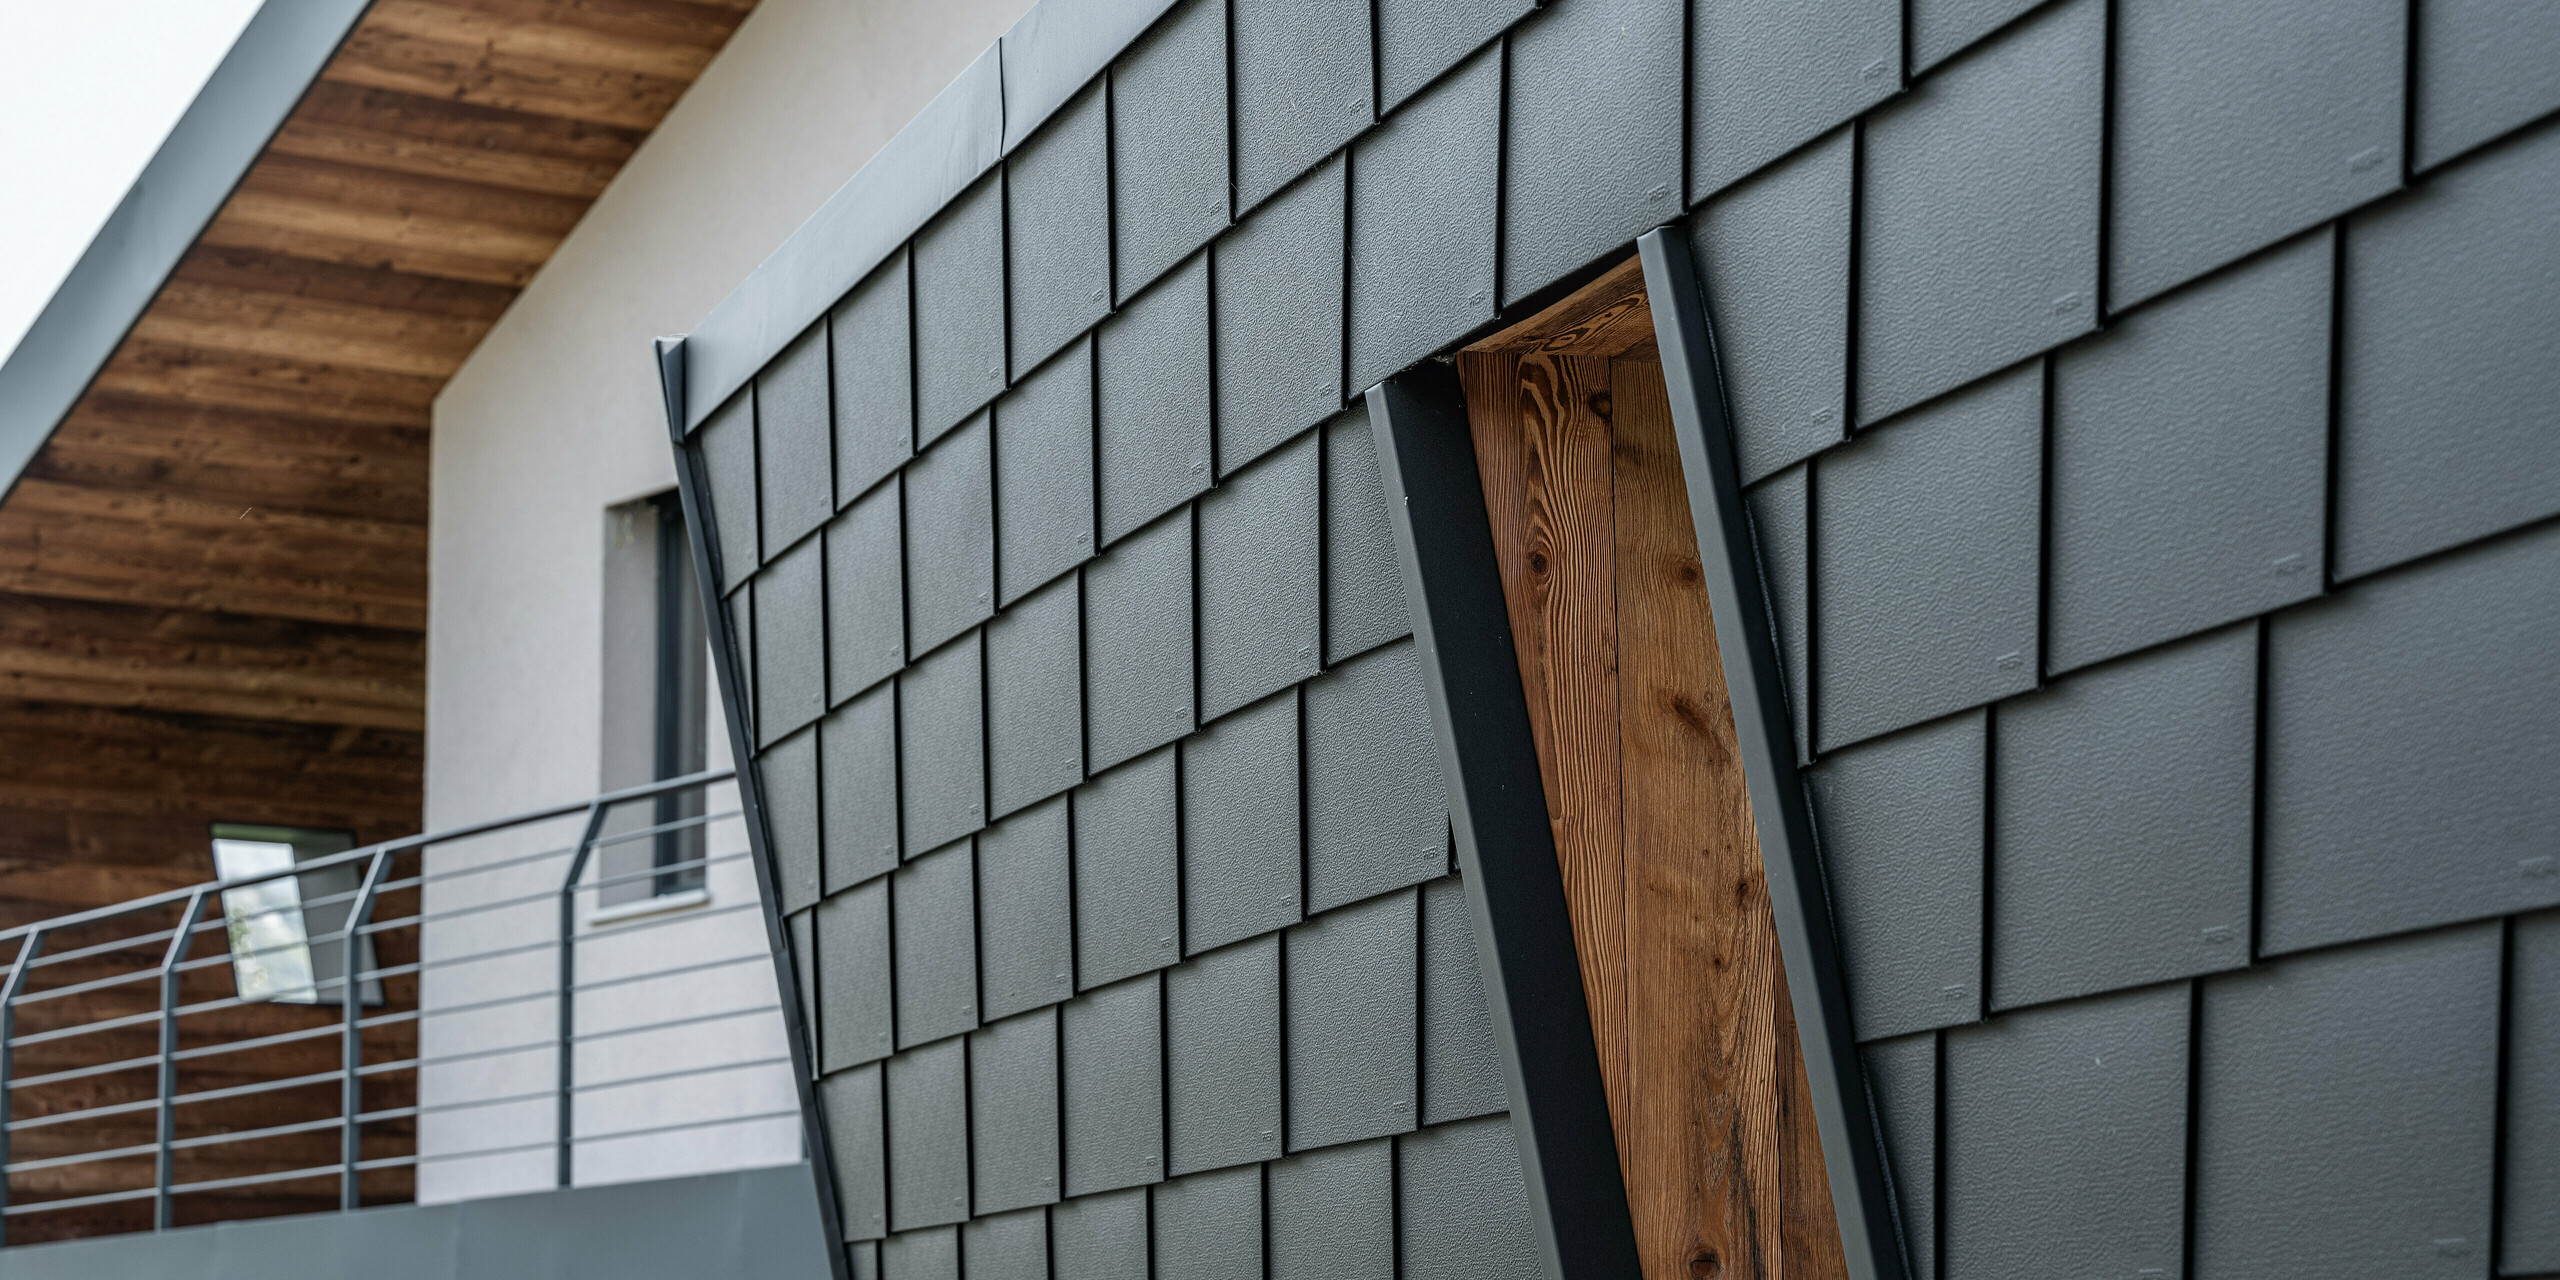 Detailaufnahme der Villa Tia in Italien mit einem PREFA Fassadensystem. Die klassischen Dach- und Wandschindeln von PREFA sind in einem versetzten Muster angeordnet, das durch die sorgfältige Verarbeitung und die dunkle Farbgebung eine moderne Textur erzeugt. Der Kontrast zwischen den Aluminiumpaneelen und den warmen Holzelementen des Dachüberstands vermittelt eine harmonische Verbindung von traditionellen und zeitgenössischen Baustoffen.